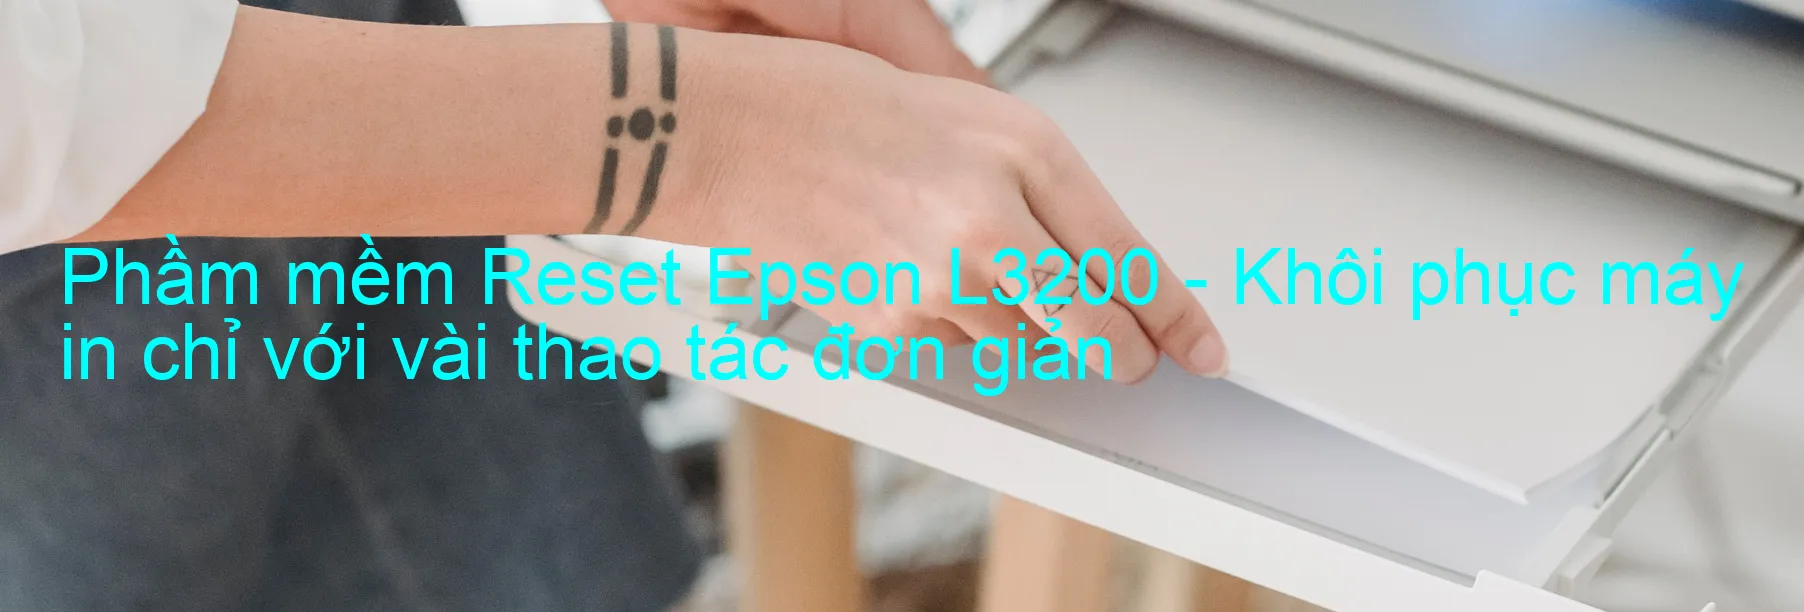 Phầm mềm Reset Epson L3200 - Khôi phục máy in chỉ với vài thao tác đơn giản